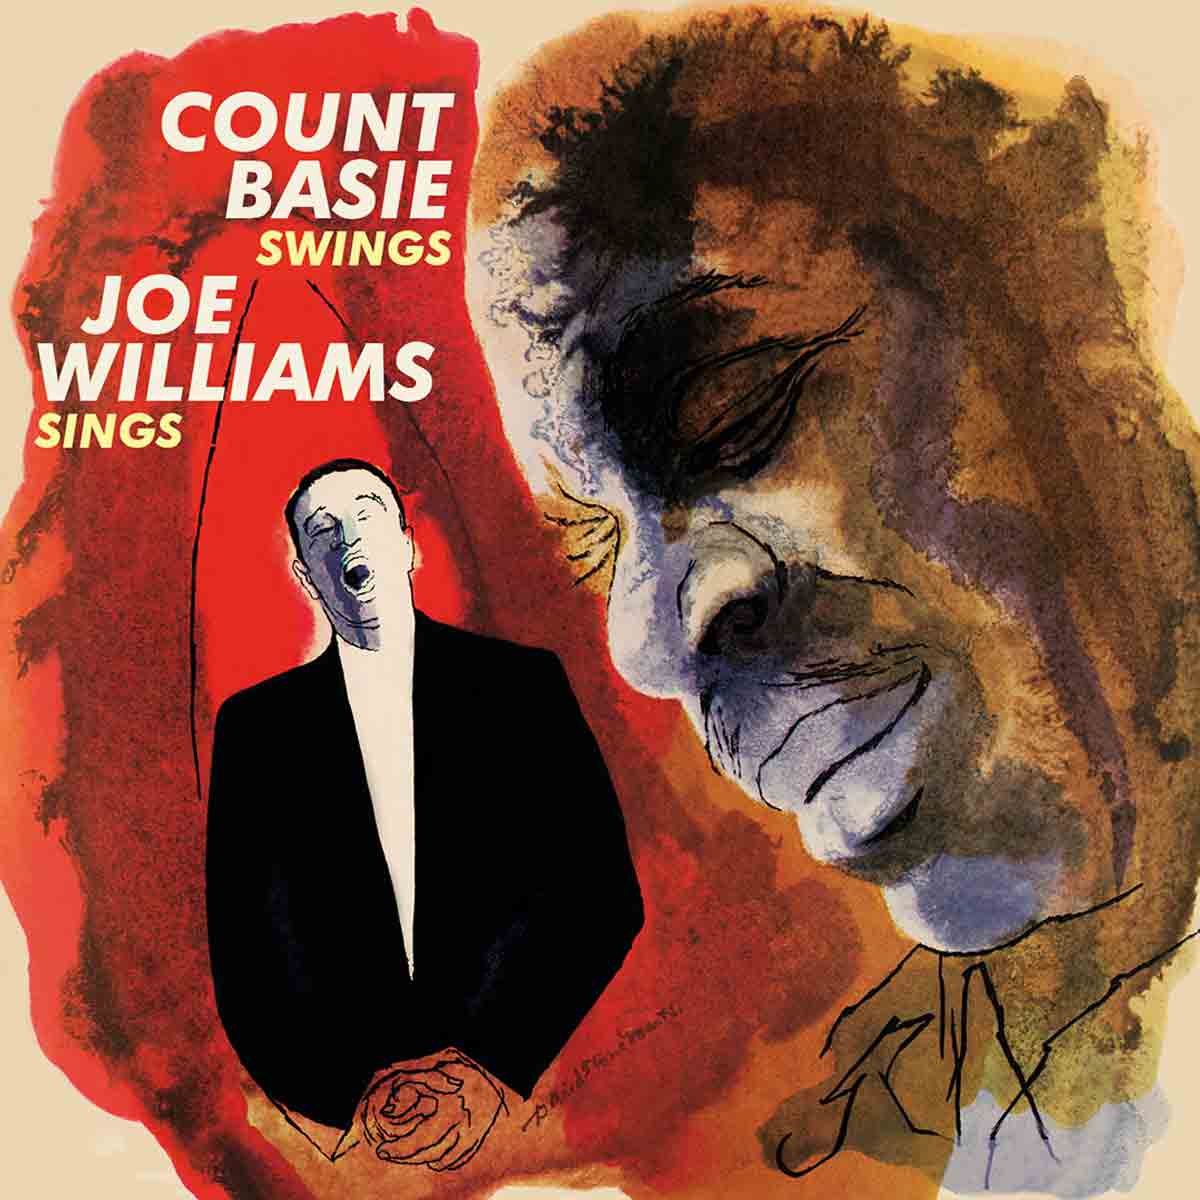 Count Basie Swings, Joe Williams Sings + The Greatest!